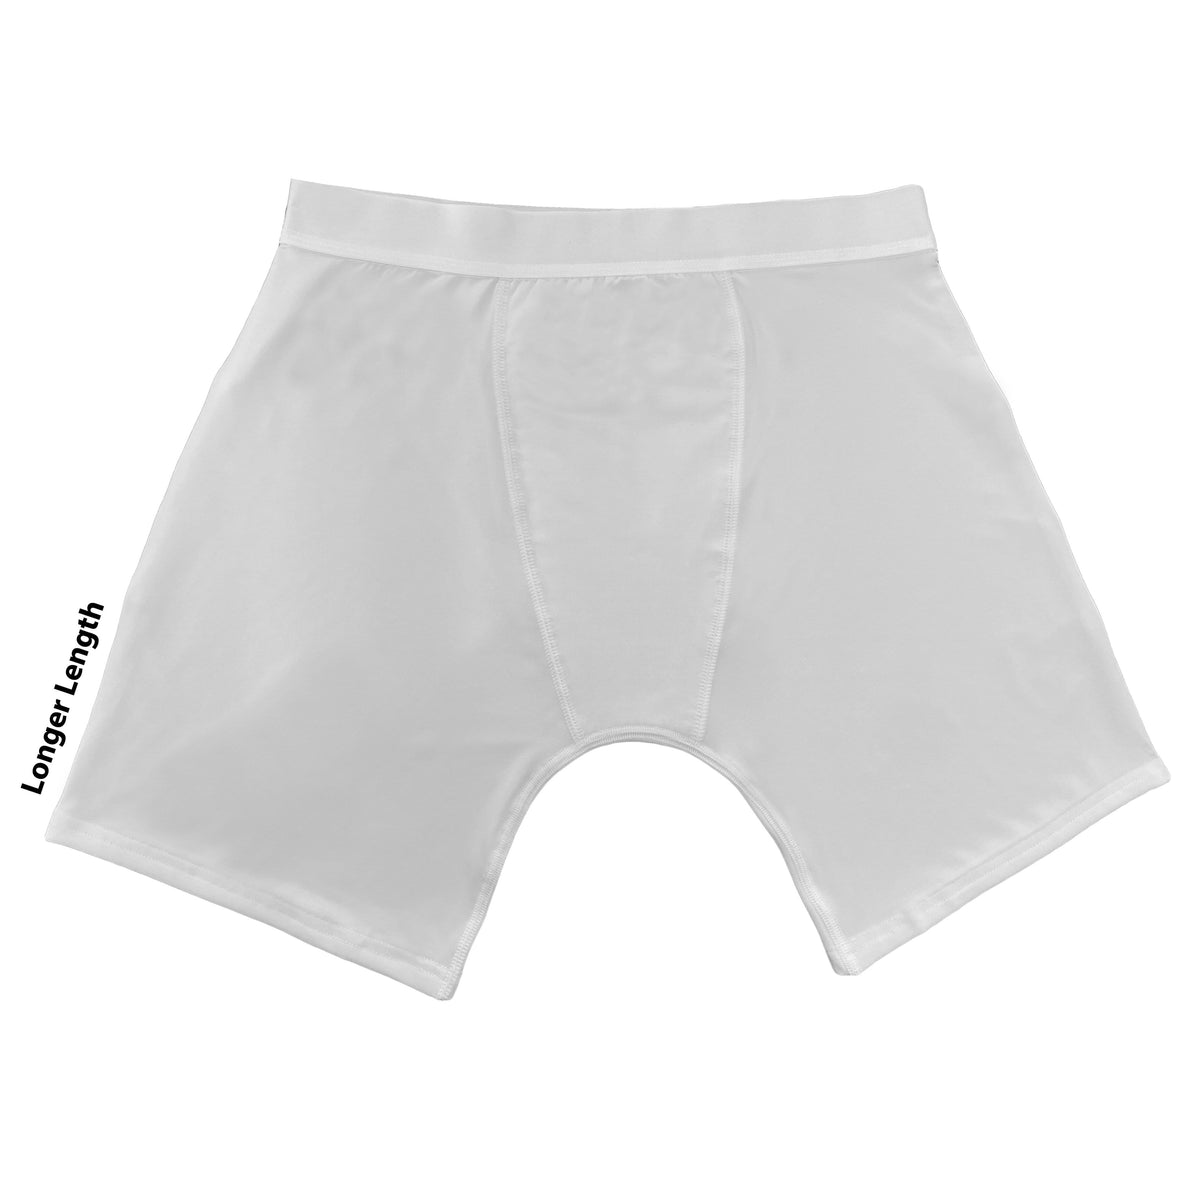 Sample Pack of Underwear/Boxers - Silky Socks